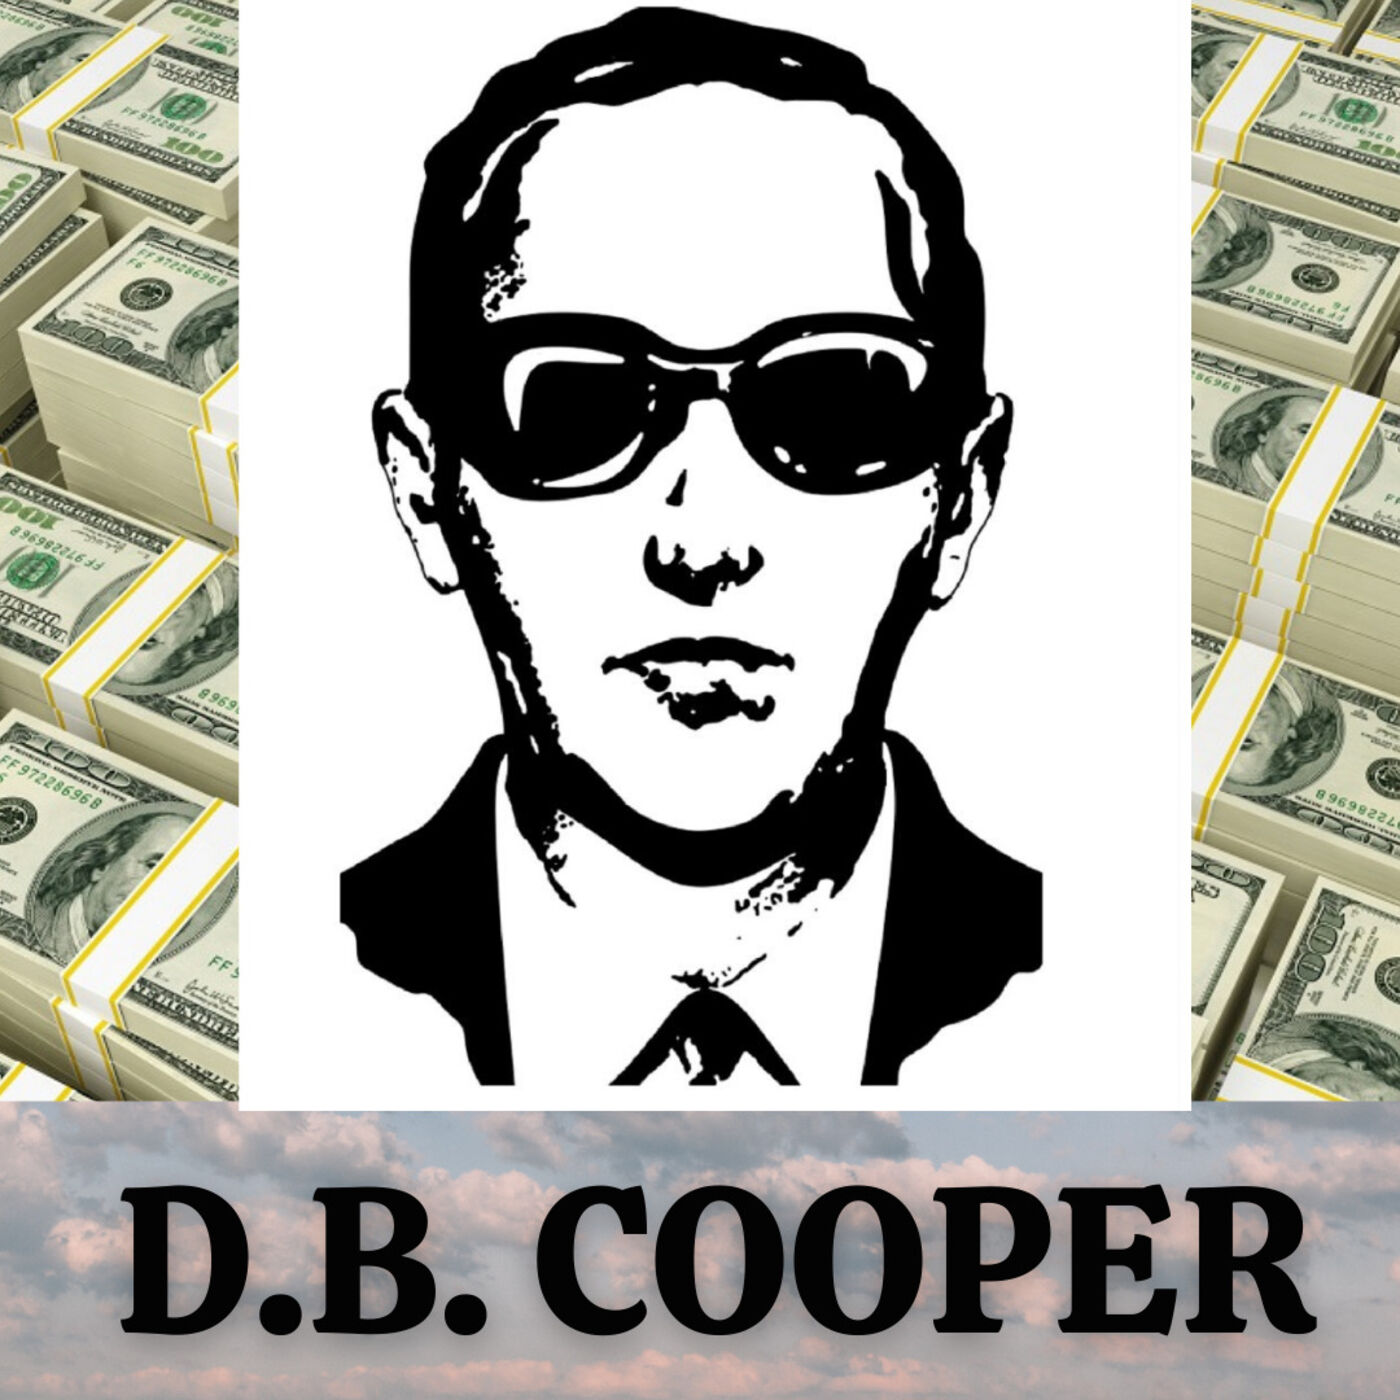 ✈️ O Sequestrador SUMIU! | DB COOPER